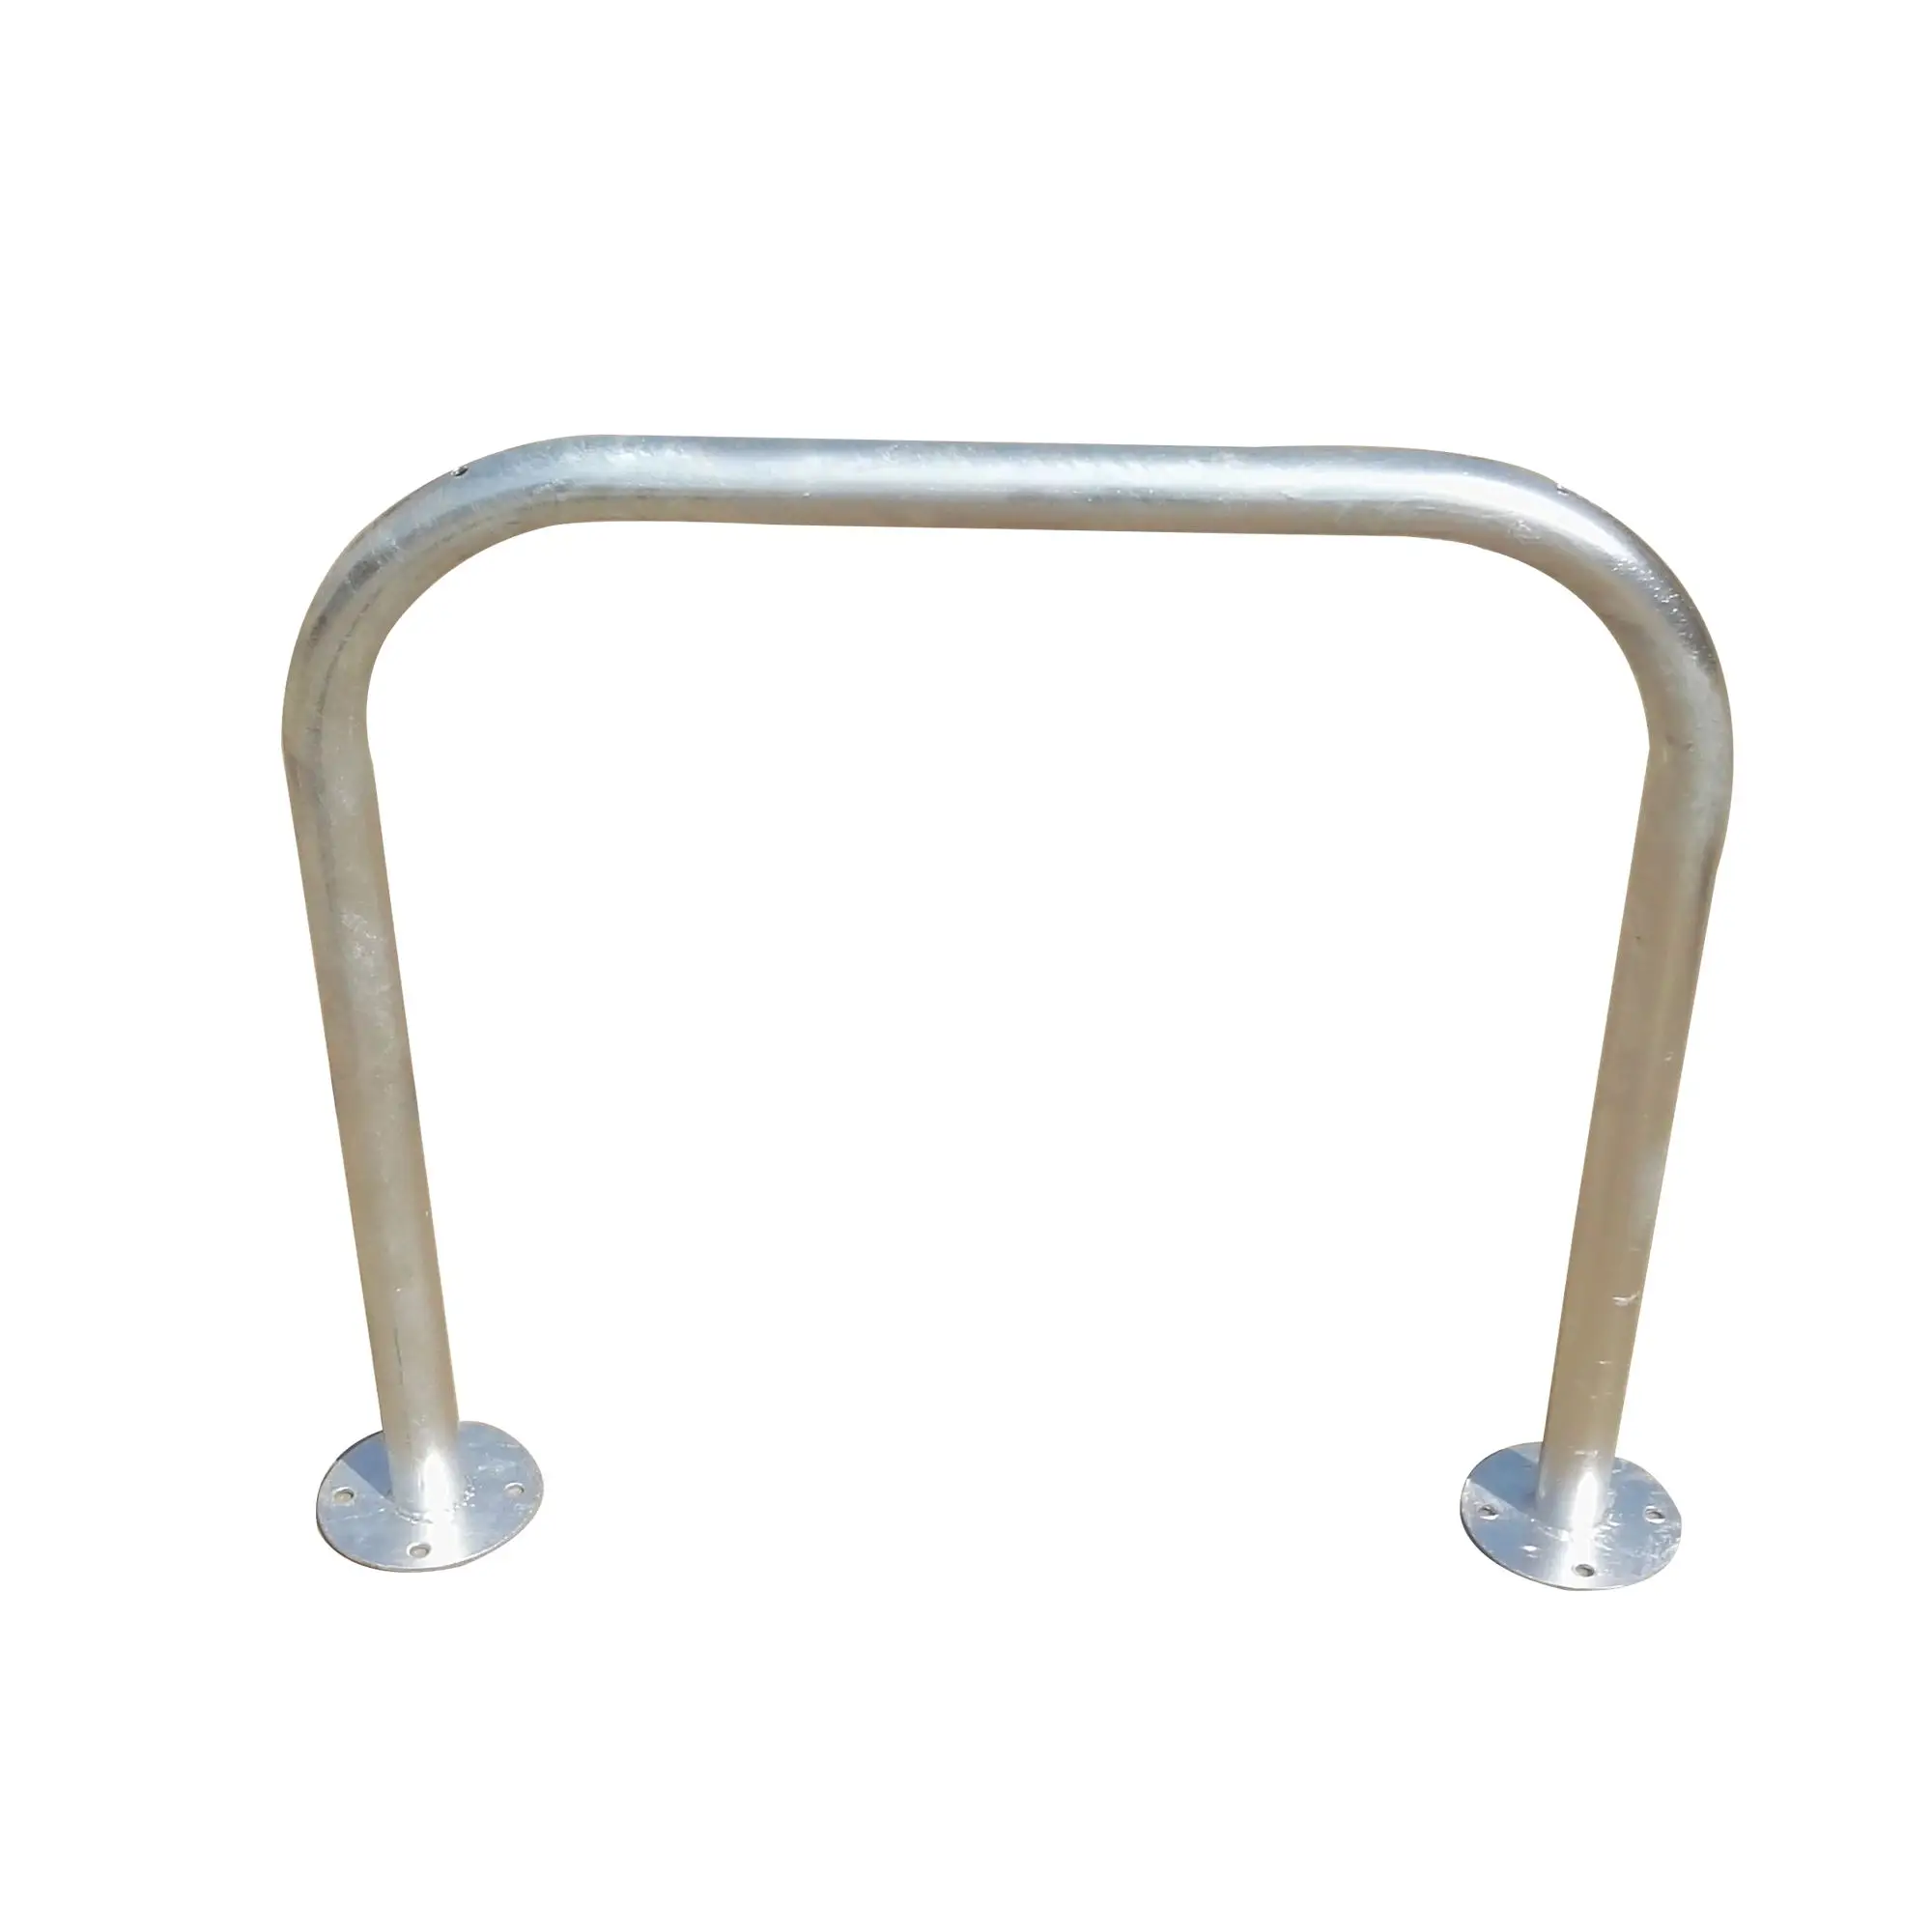 metal bicycle rack